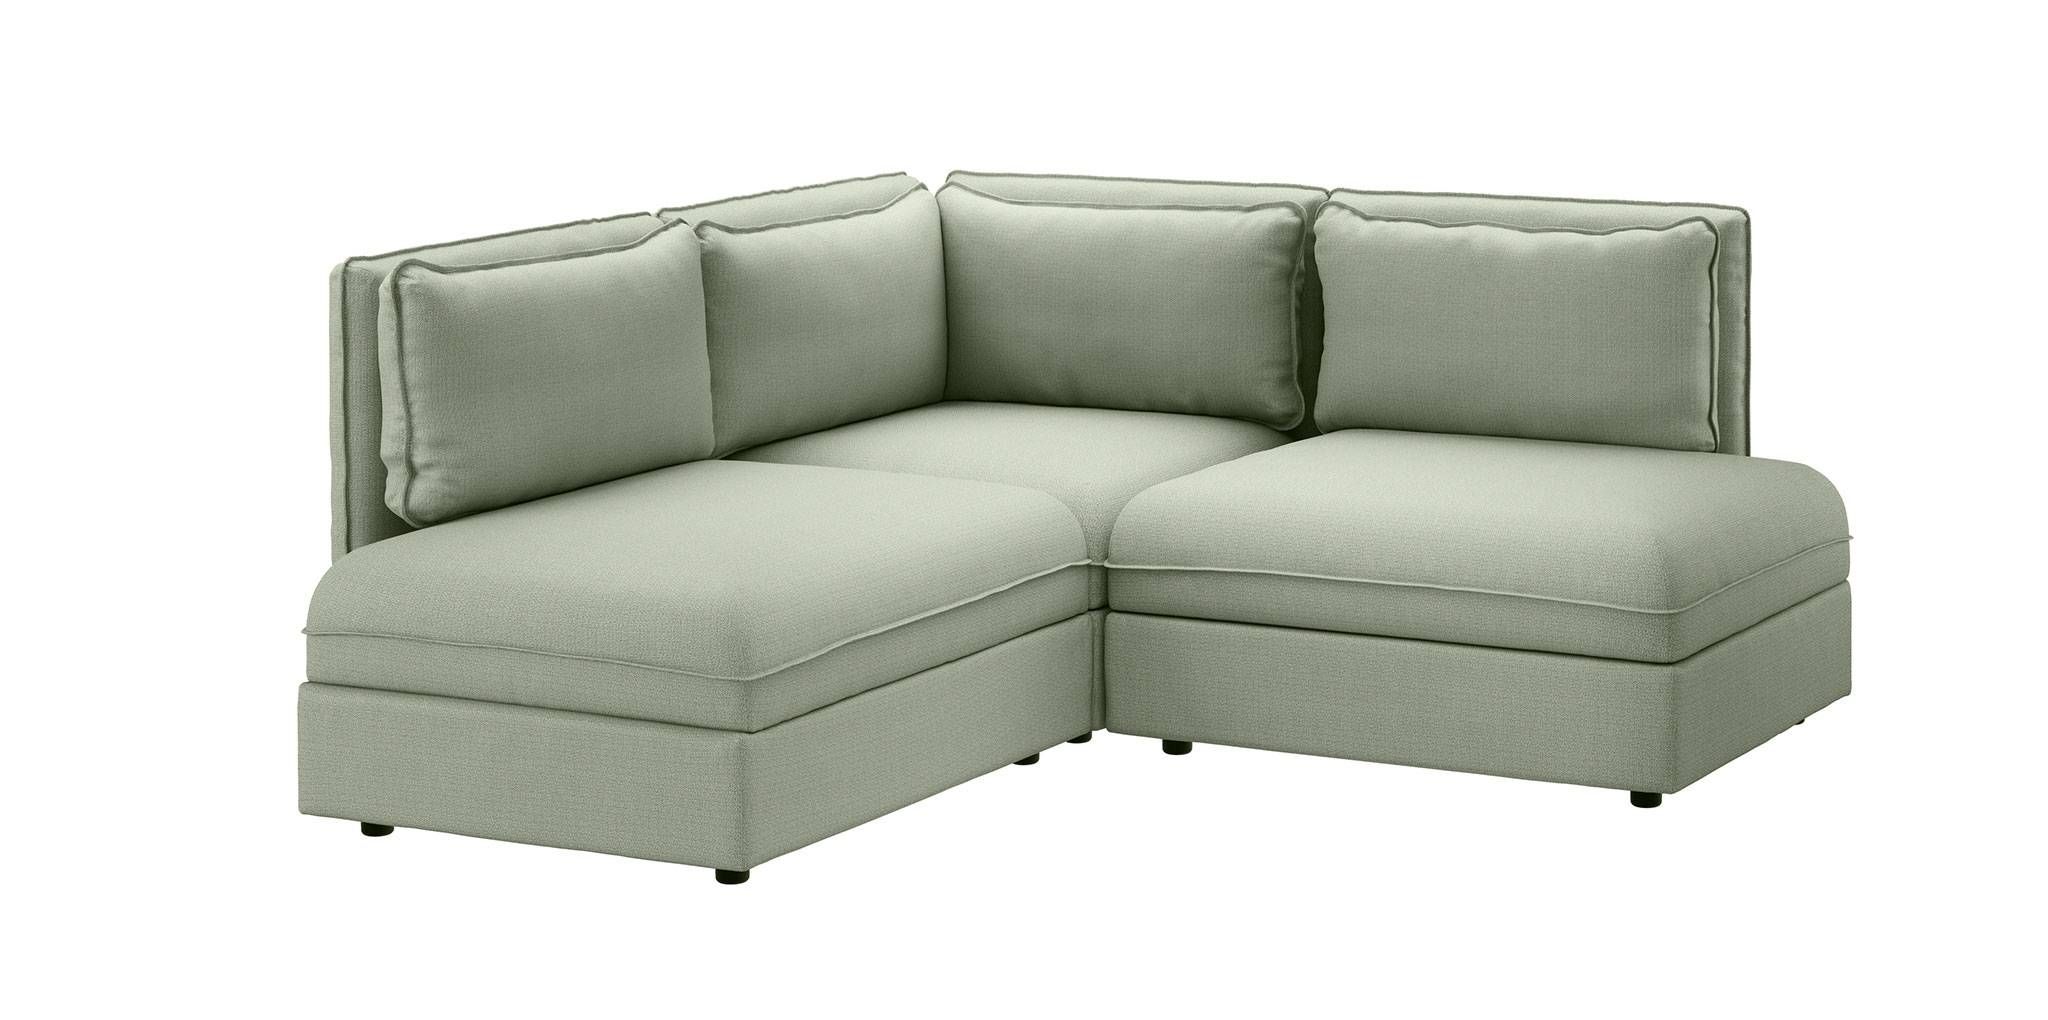 small corner sofa in leather